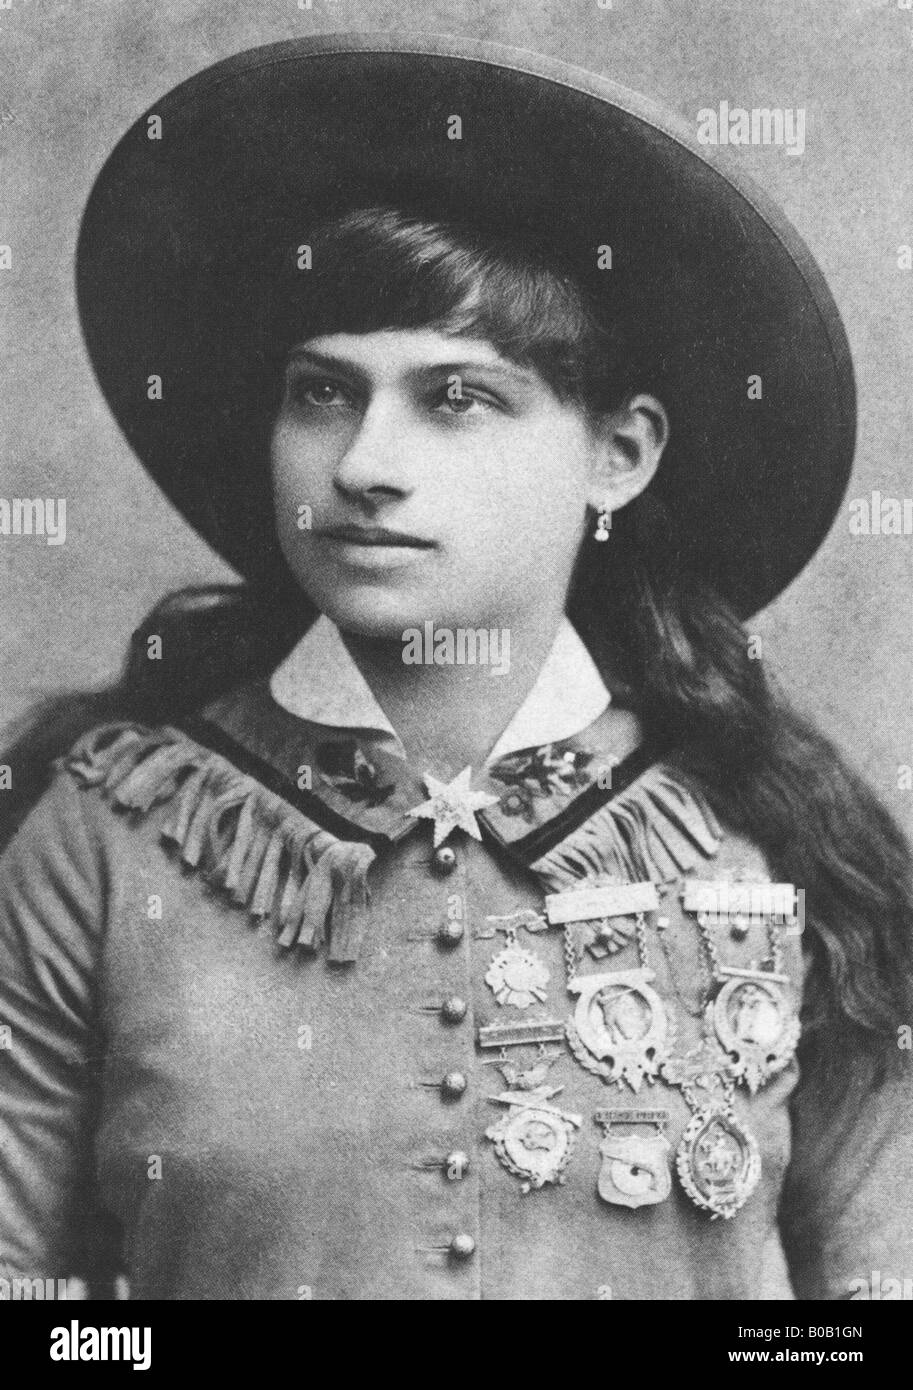 ANNIE OAKLEY - nosotros sharp shooter y ejecutante del salvaje oeste alrededor de 1890 Foto de stock